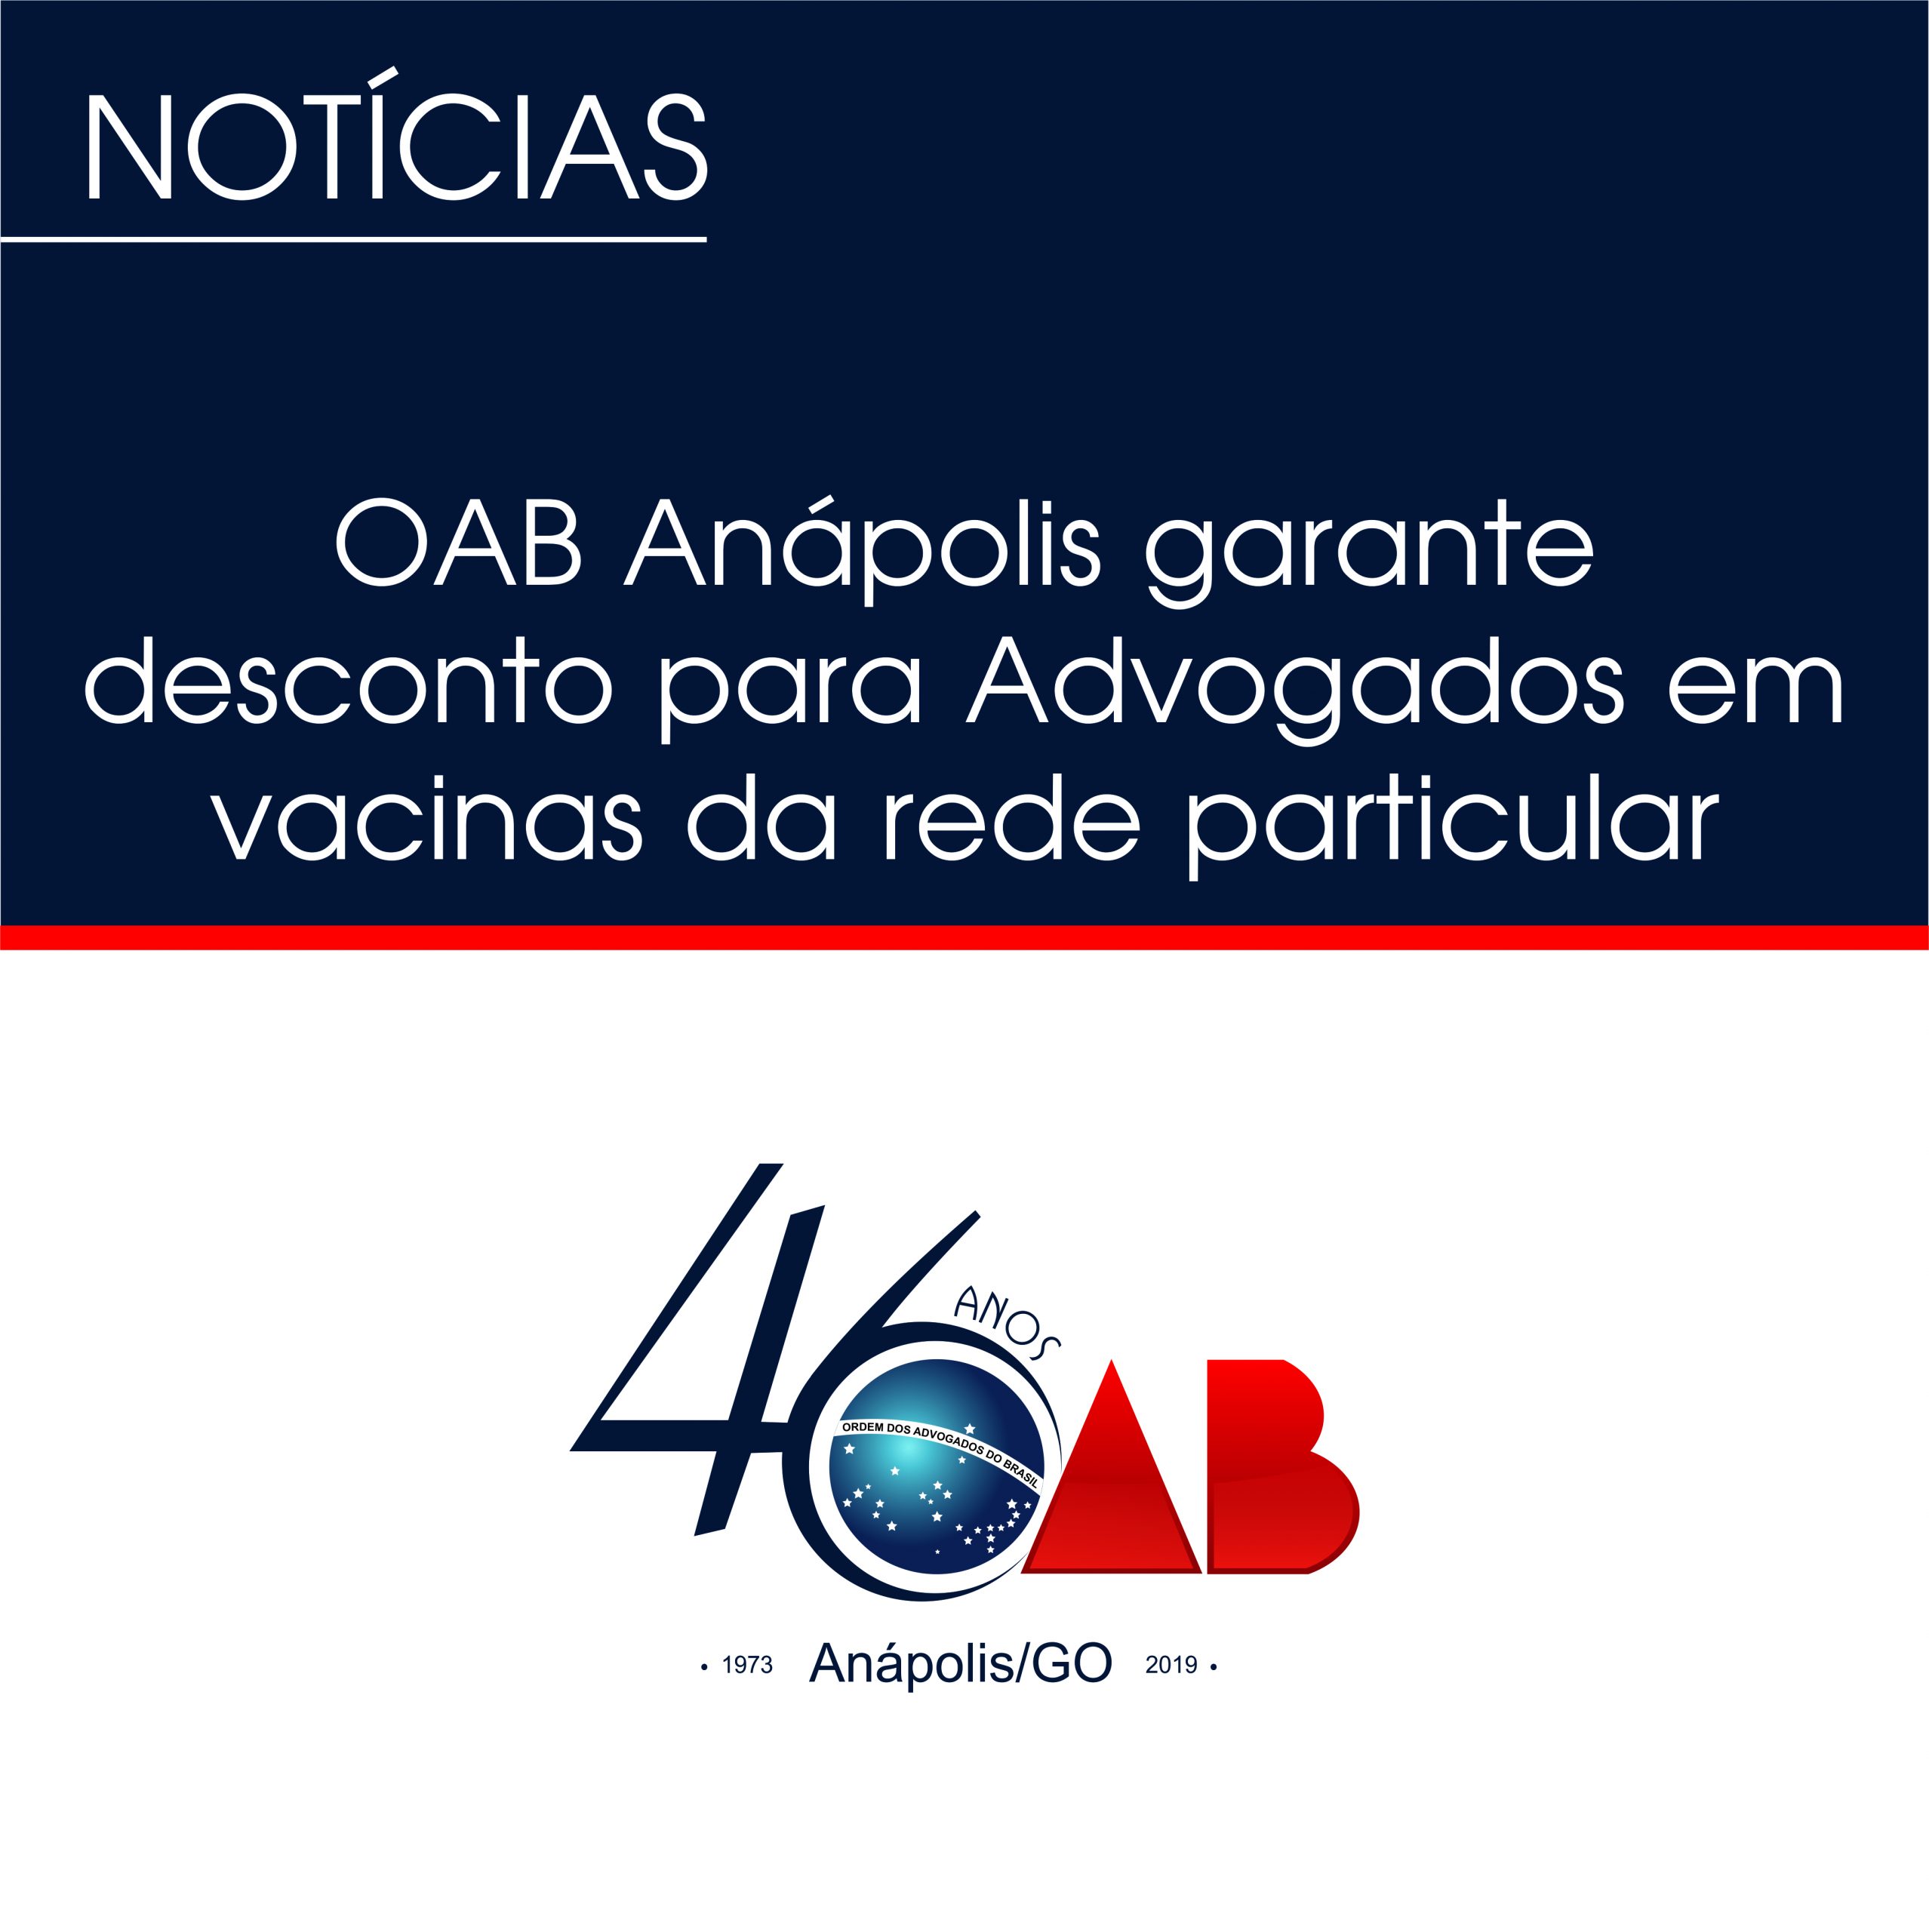 OAB Anápolis garante desconto para Advogados em vacinas da rede particular